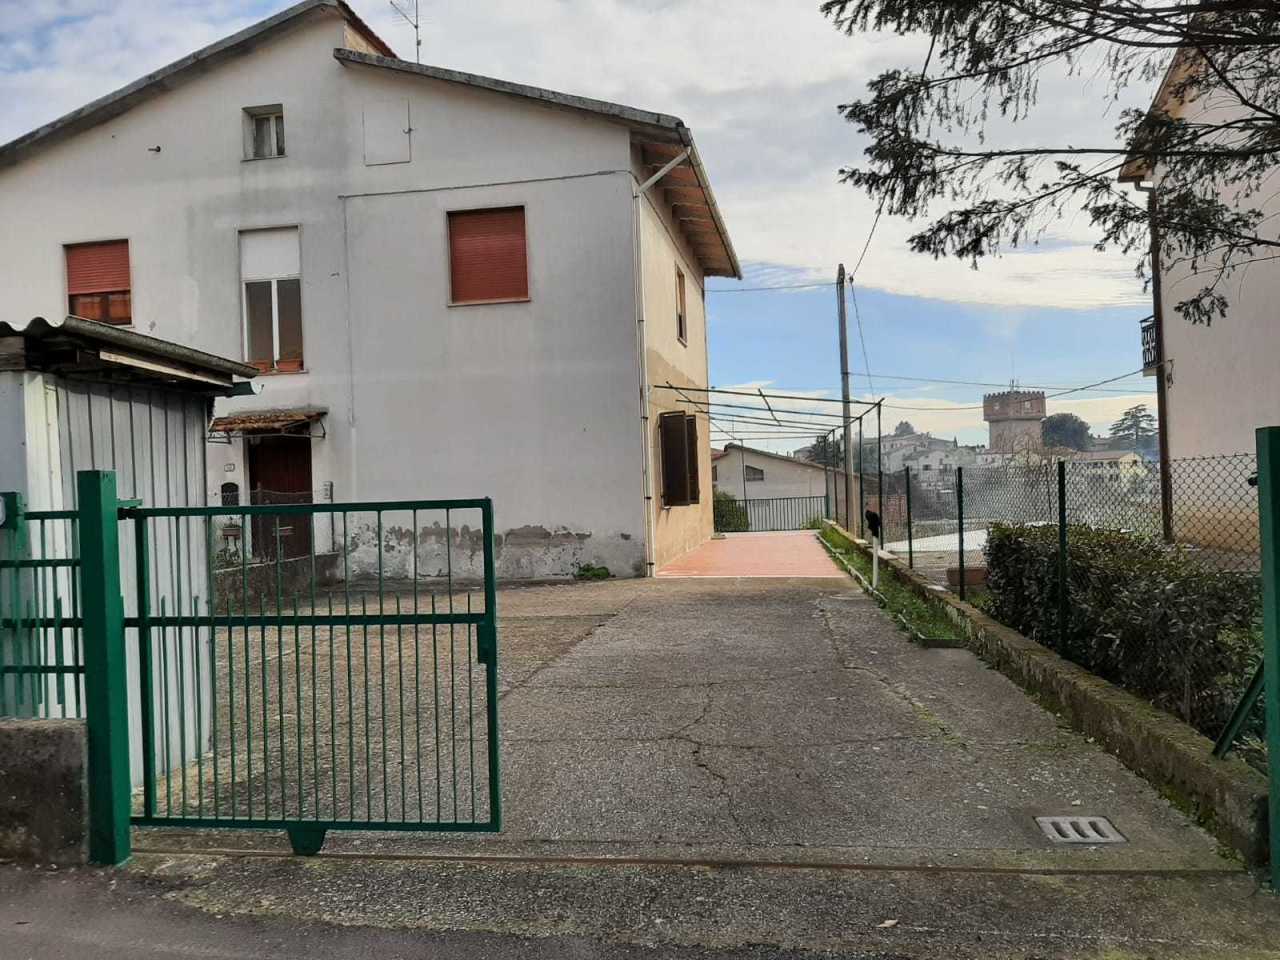 Appartamento in vendita a Avigliano Umbro, 4 locali, prezzo € 42.000 | PortaleAgenzieImmobiliari.it